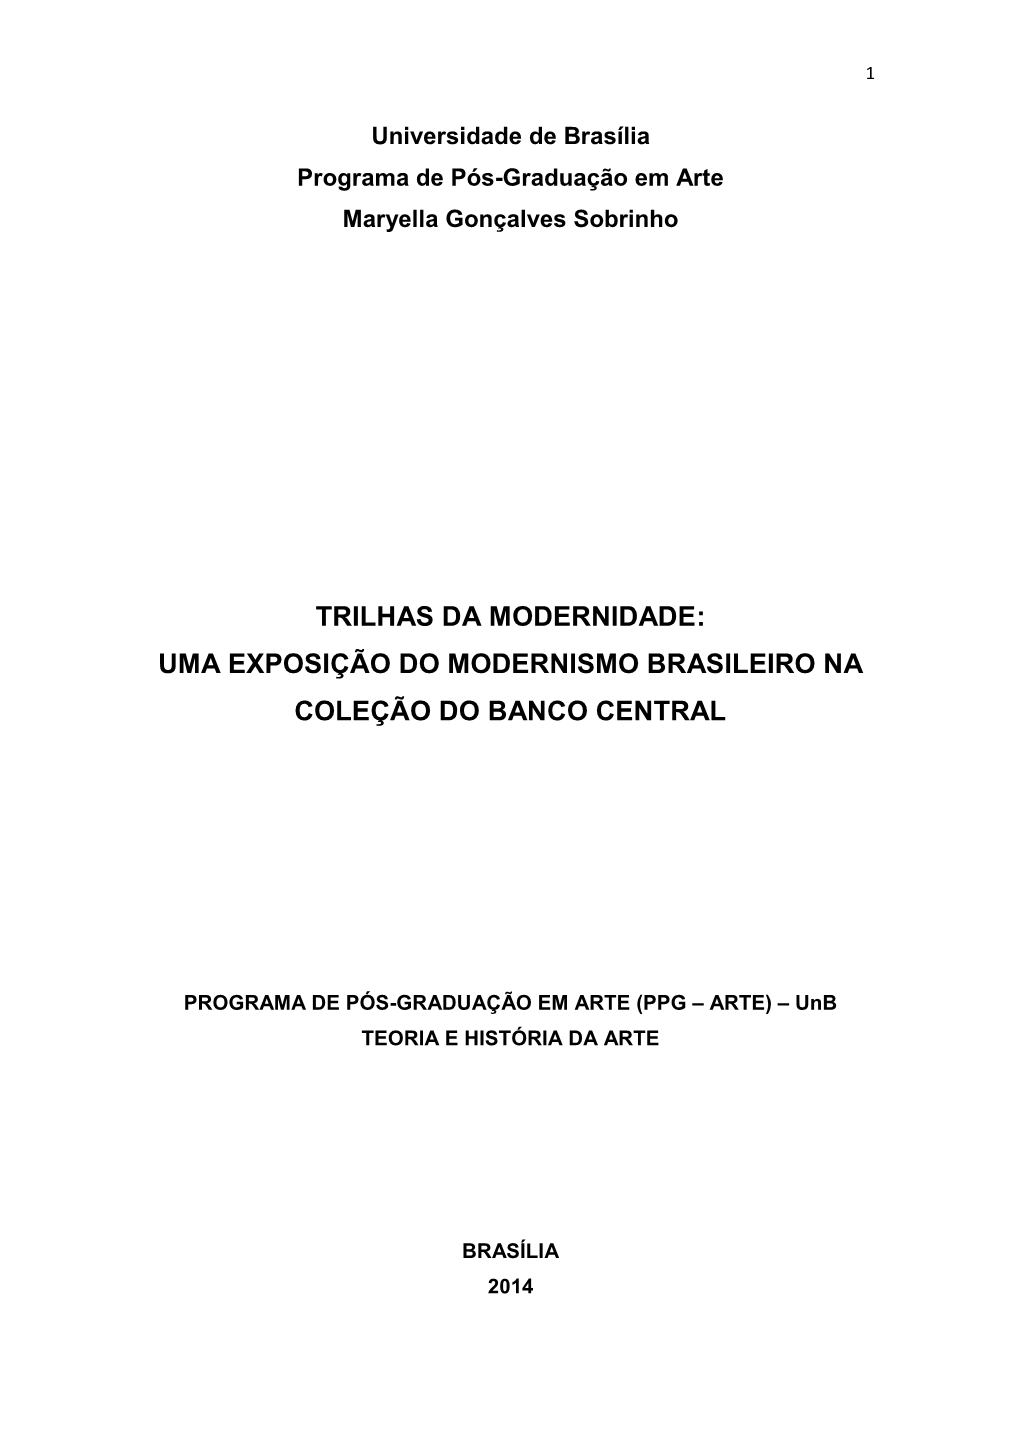 Uma Exposição Do Modernismo Brasileiro Na Coleção Do Banco Central